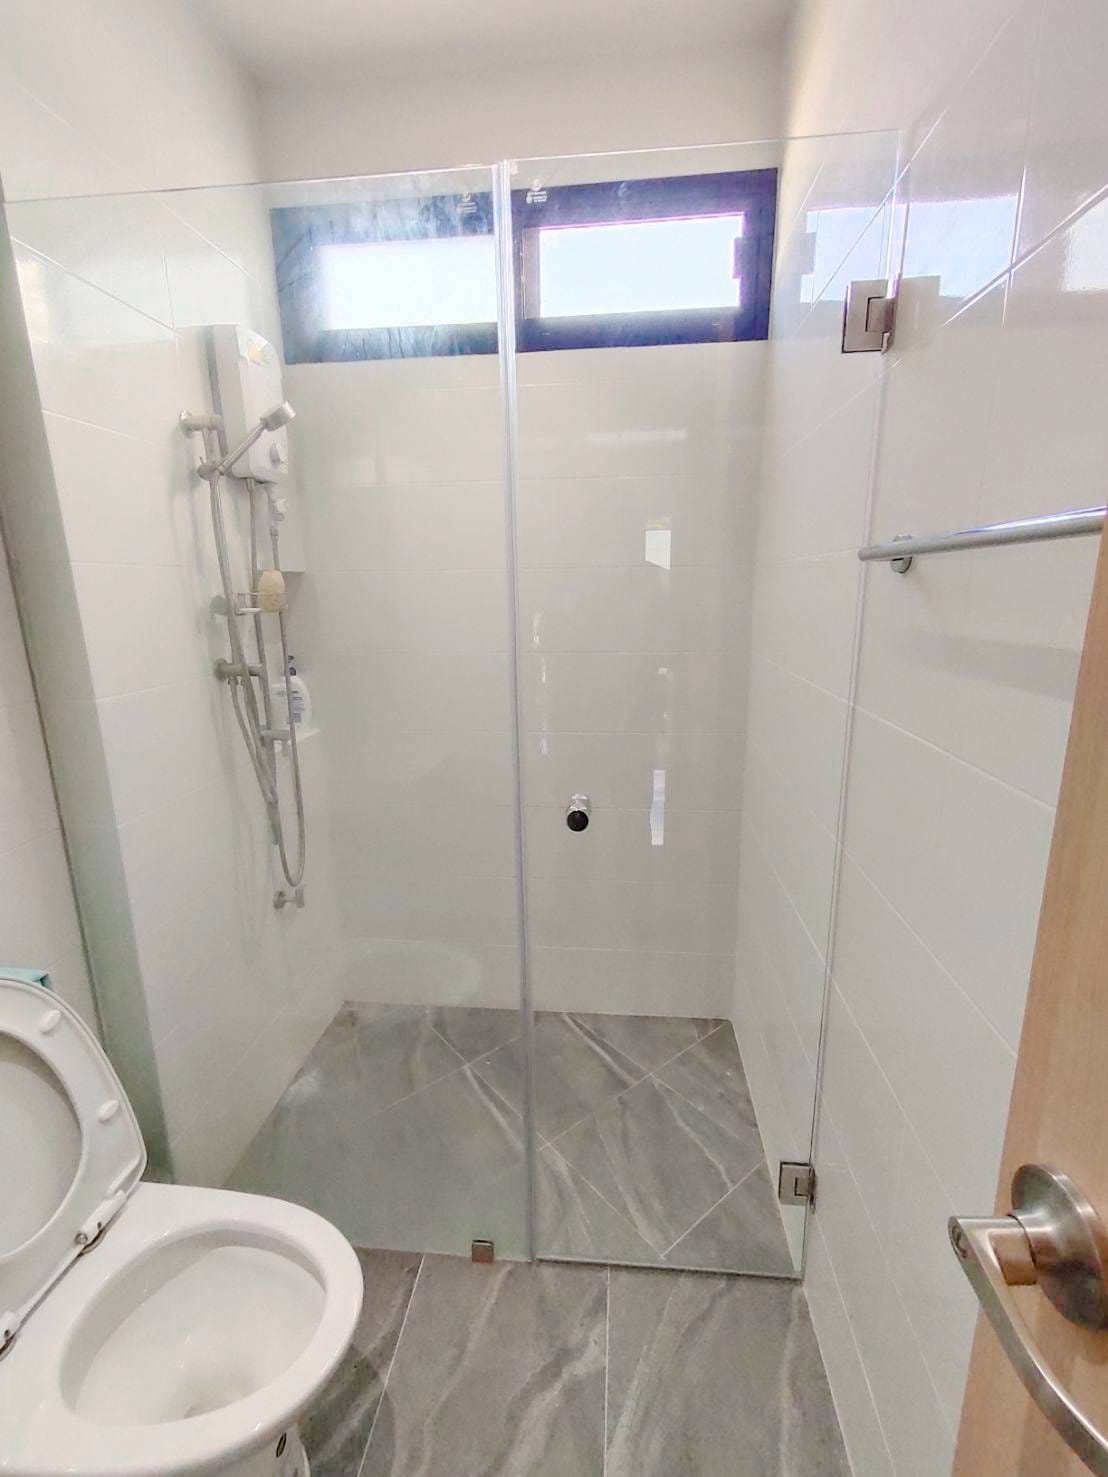 กั้นโซนแห้งโซนเปียก ในห้องน้ำด้วยกระจกนิรภัย หนา 10 มิลลิเมตร